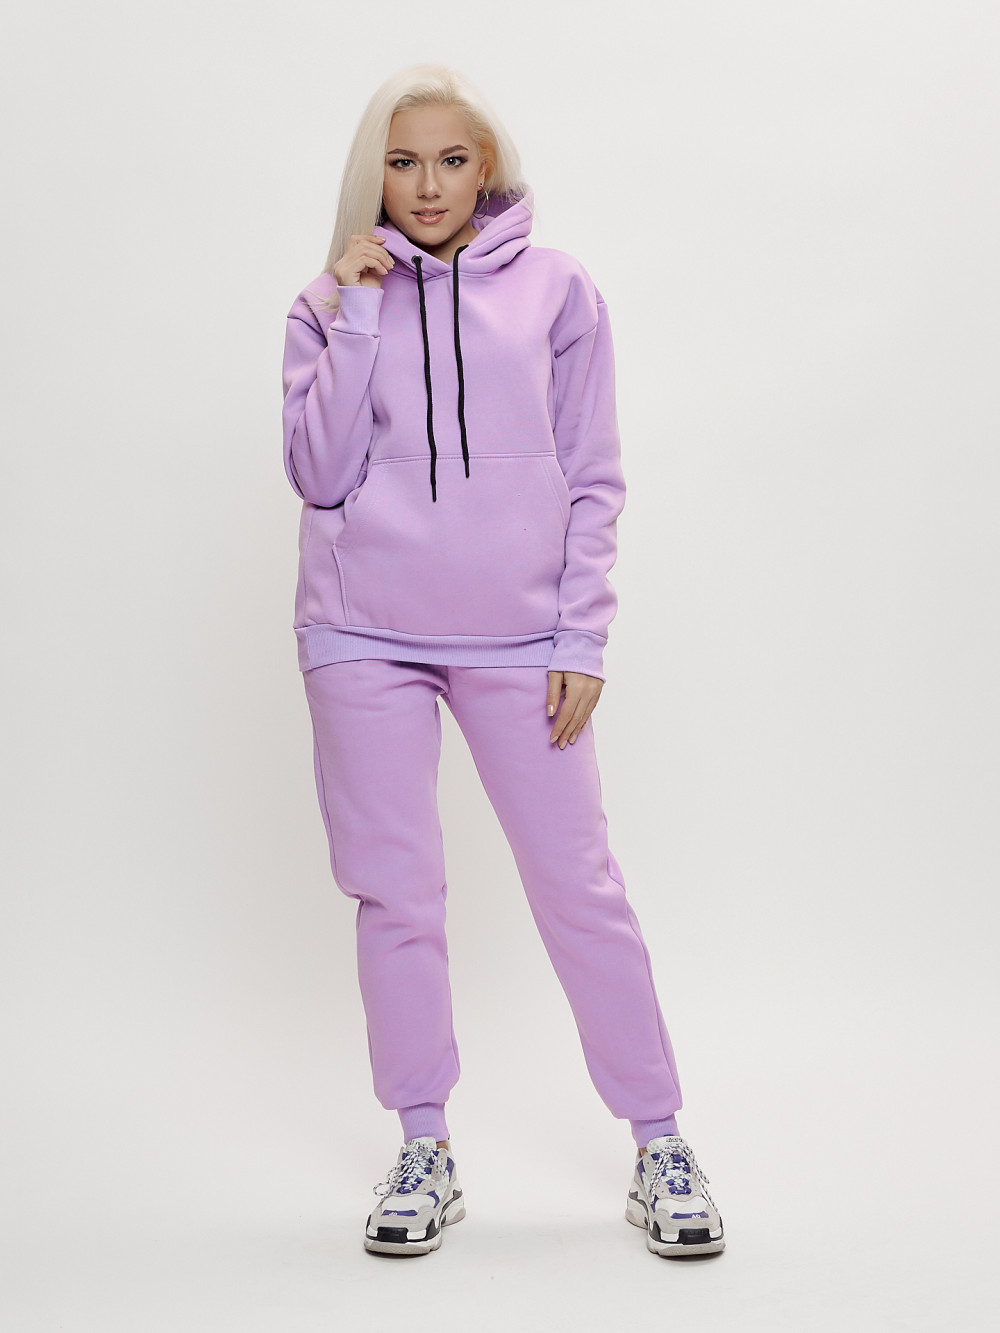 Купить оптом Трикотажный спортивный костюм женский с начесом фиолетового цвета 1084F в Екатеринбурге